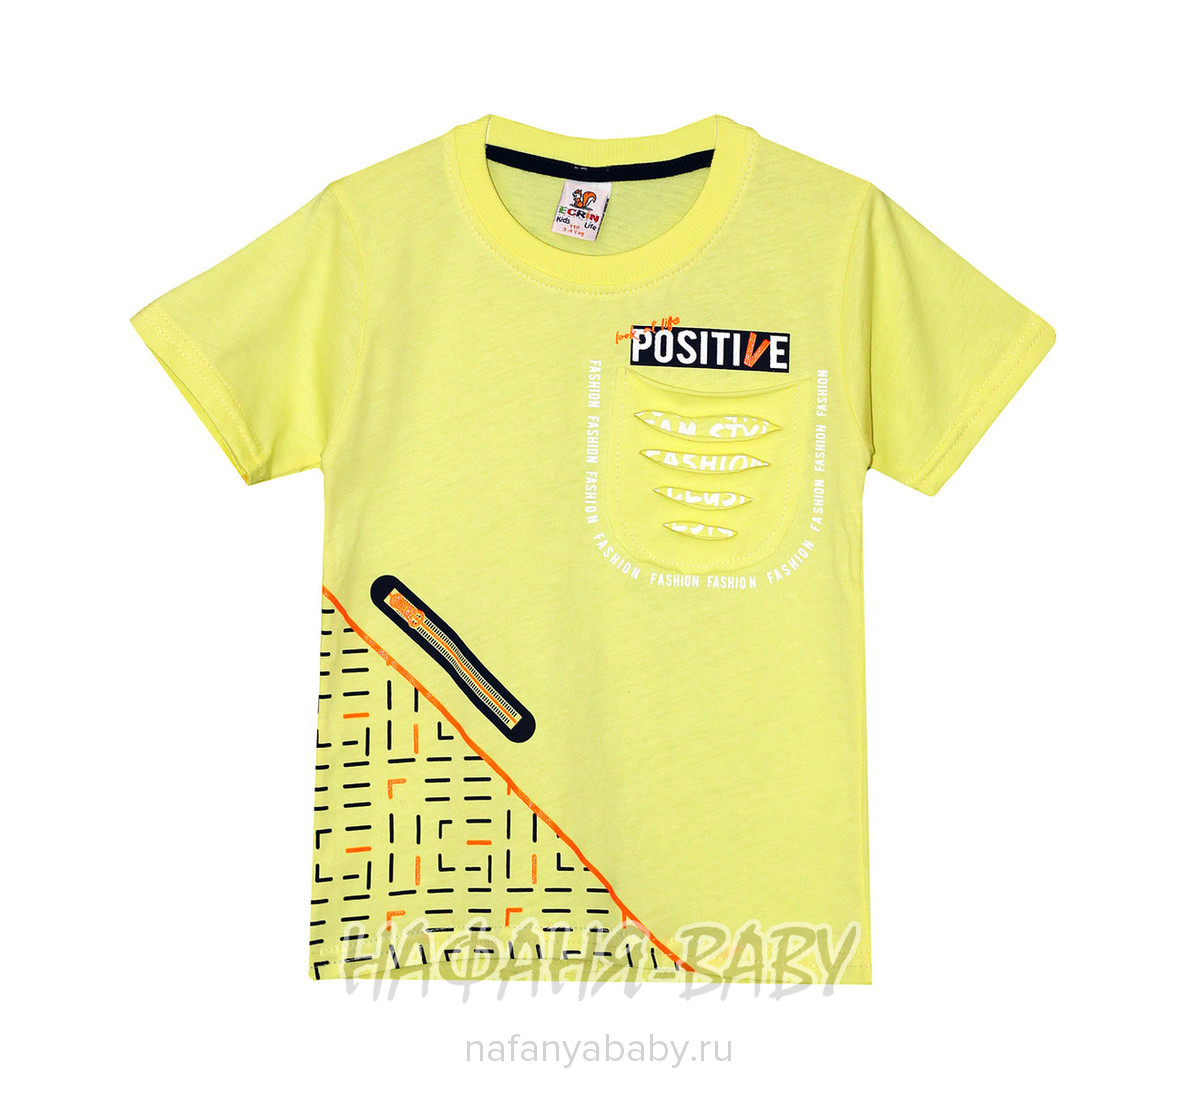 Детская футболка ECRIN, купить в интернет магазине Нафаня. арт: 2861.